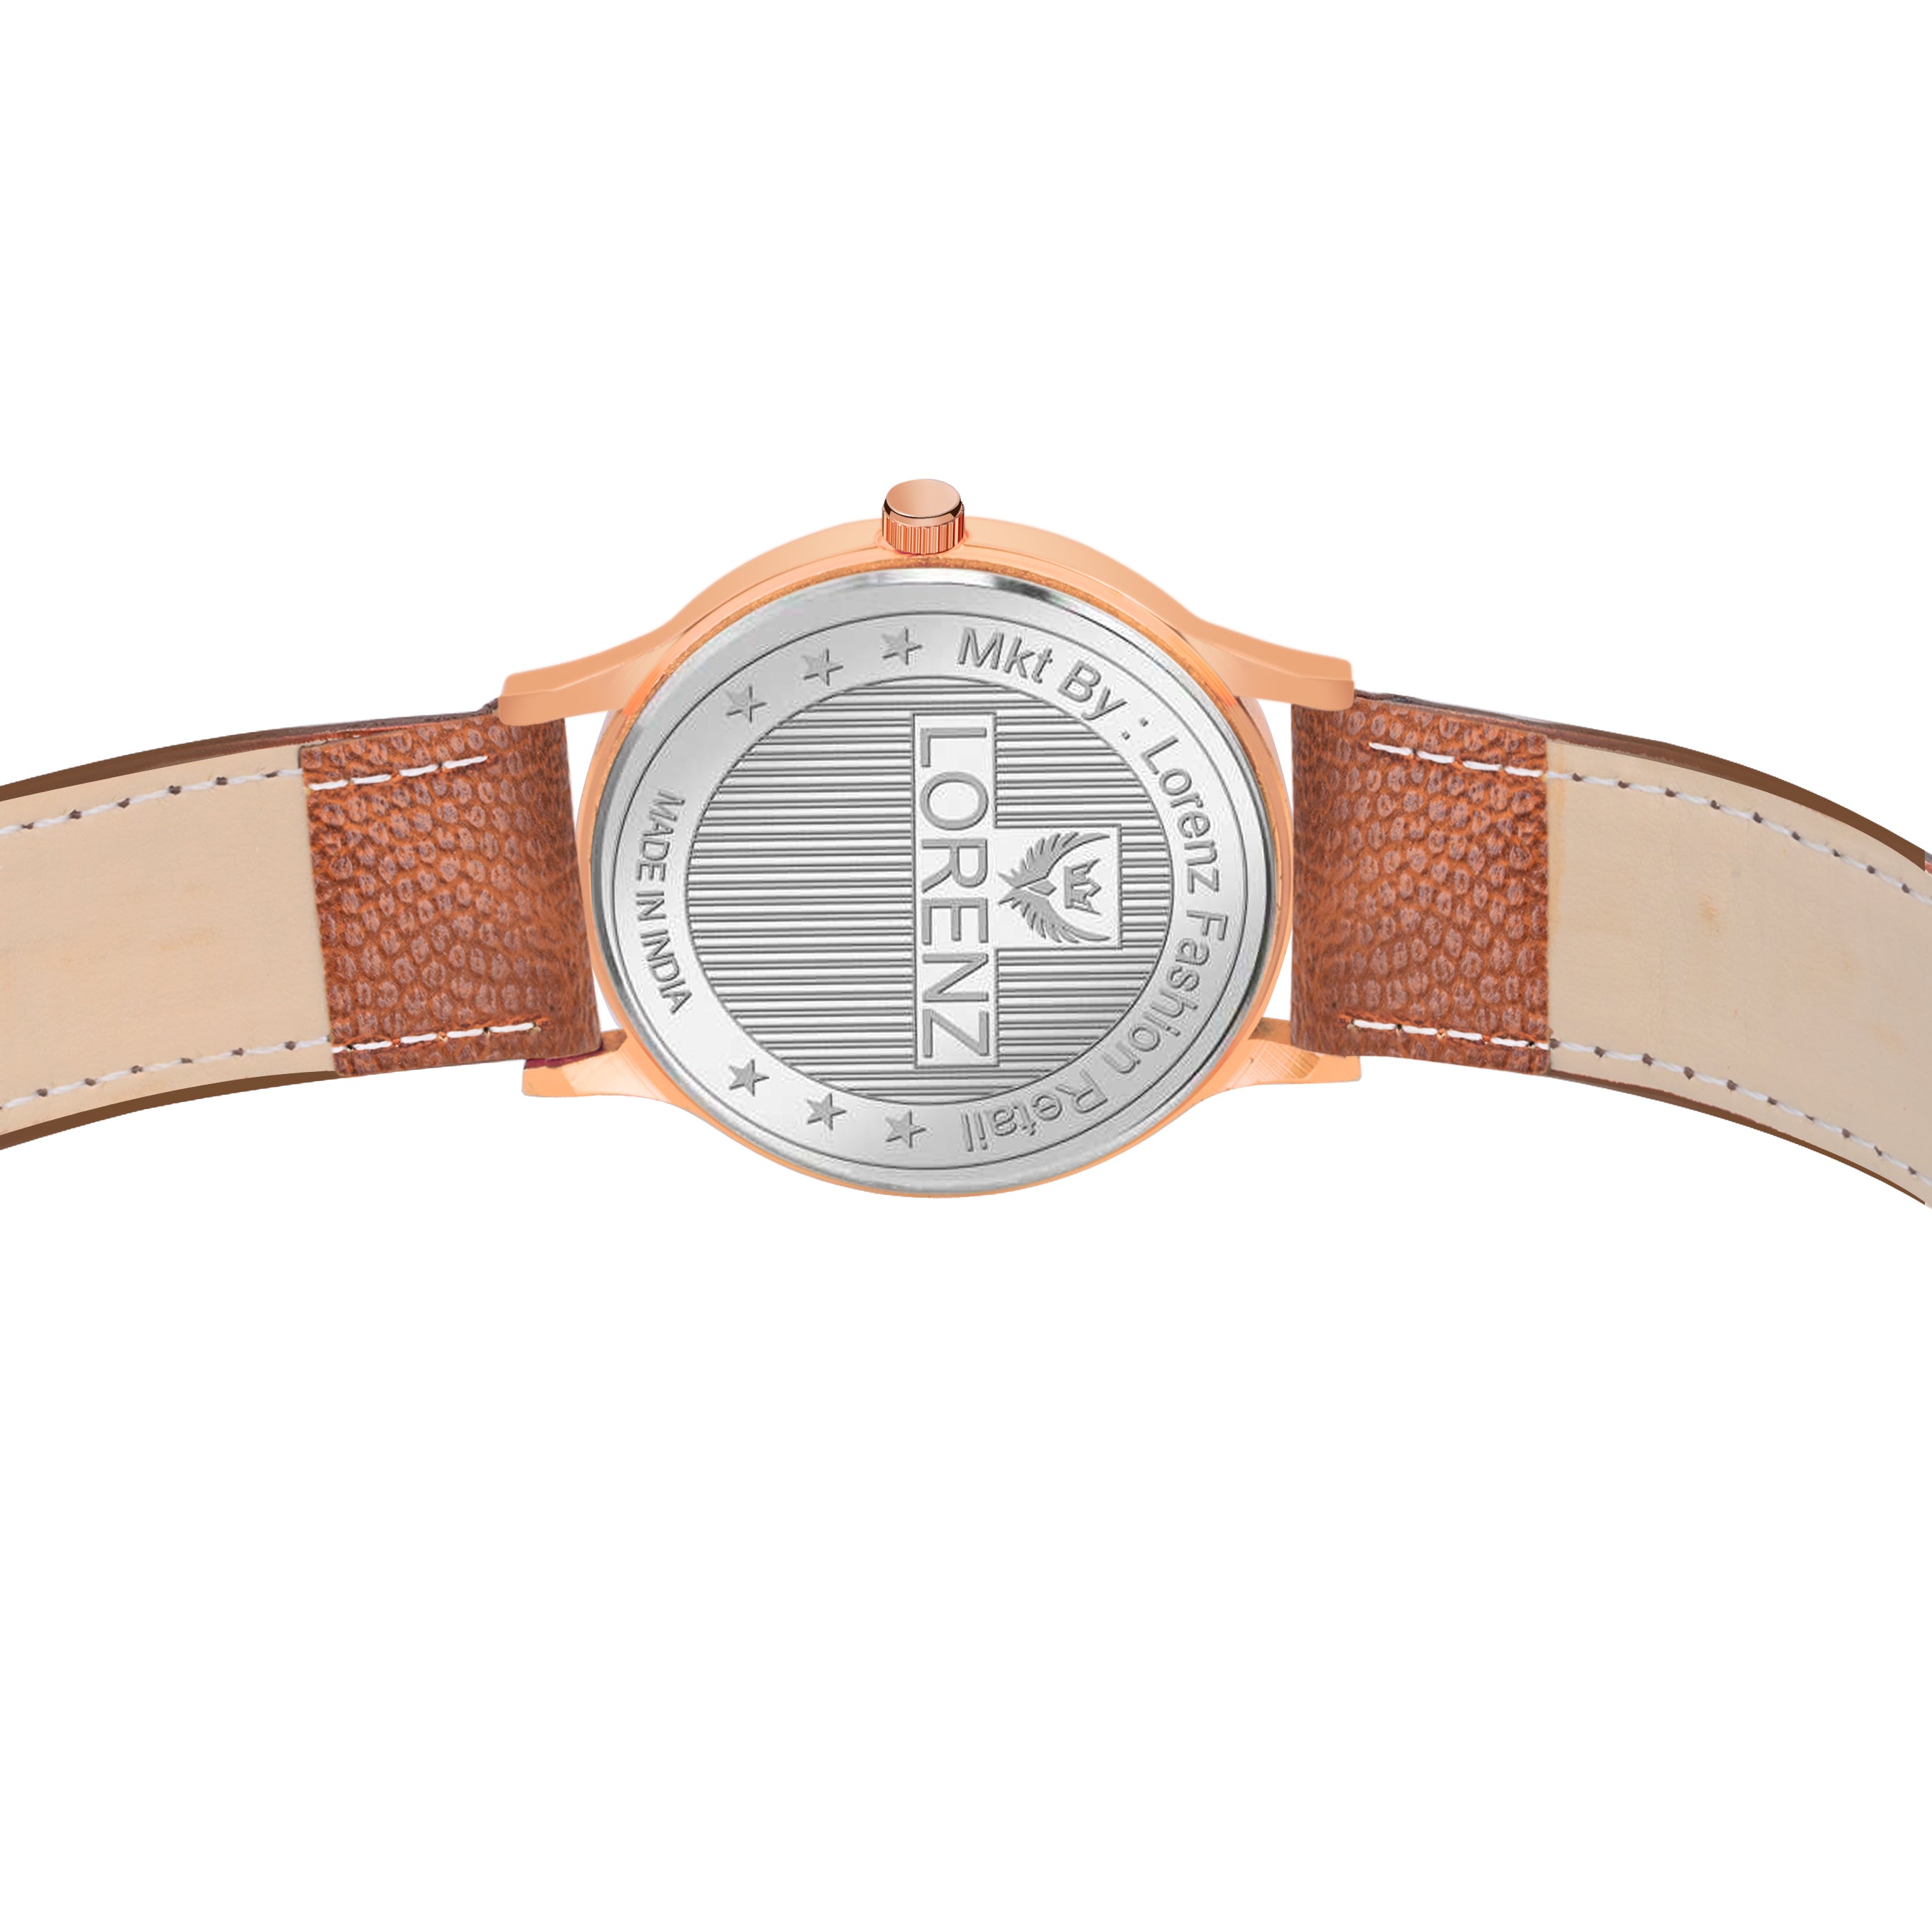 Lorenz Men's White Dial Watch & Tan Wallet Gift Set